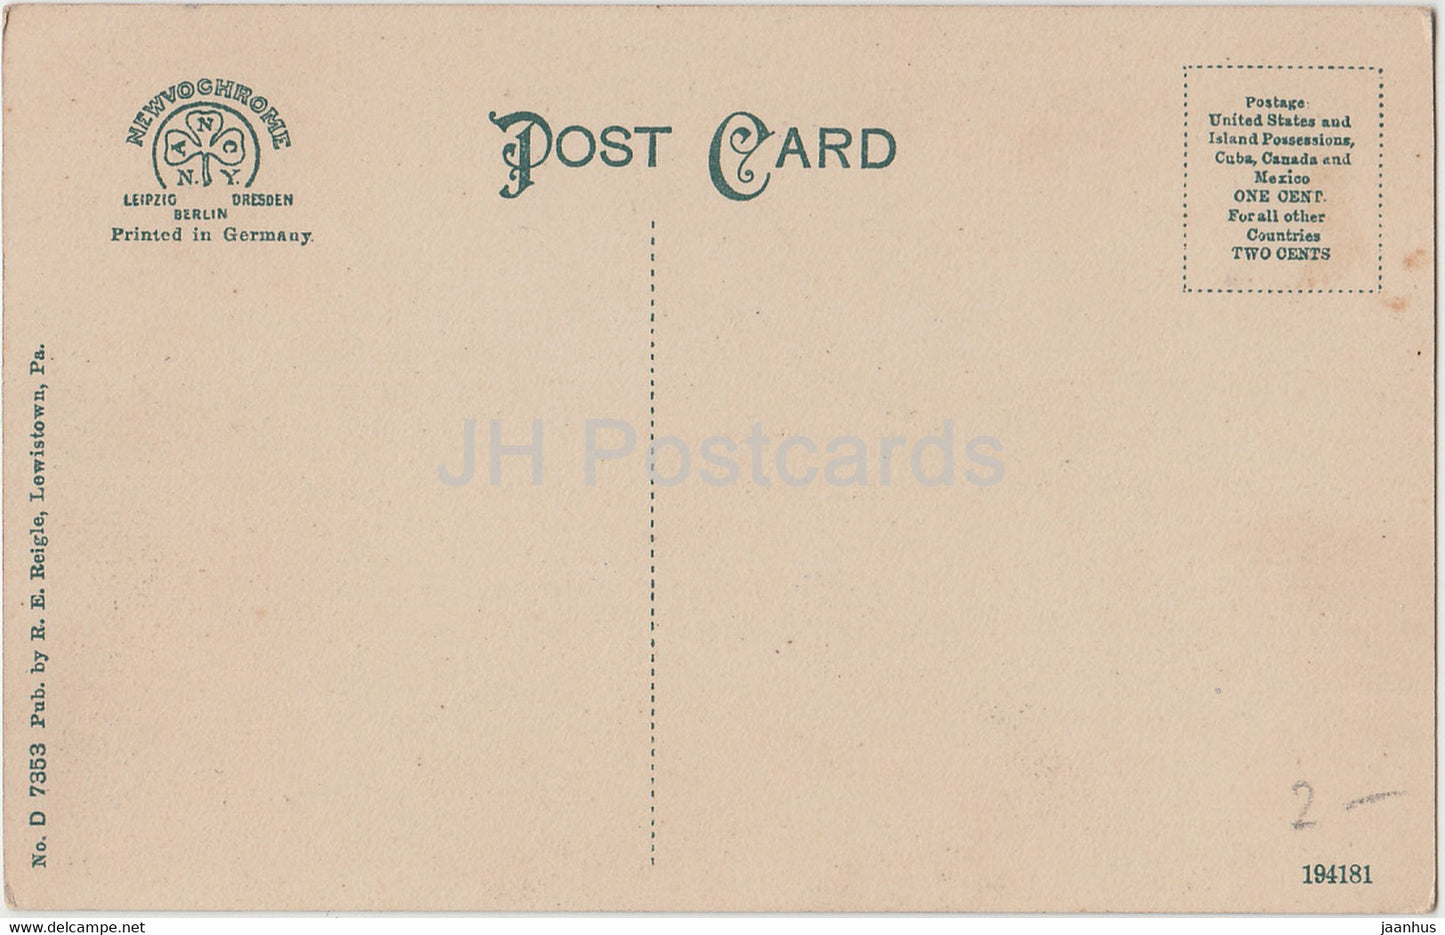 Lewistown - Moonlight on Jacks Creek - PA - 7353 - alte Postkarte - Vereinigte Staaten - USA - unbenutzt